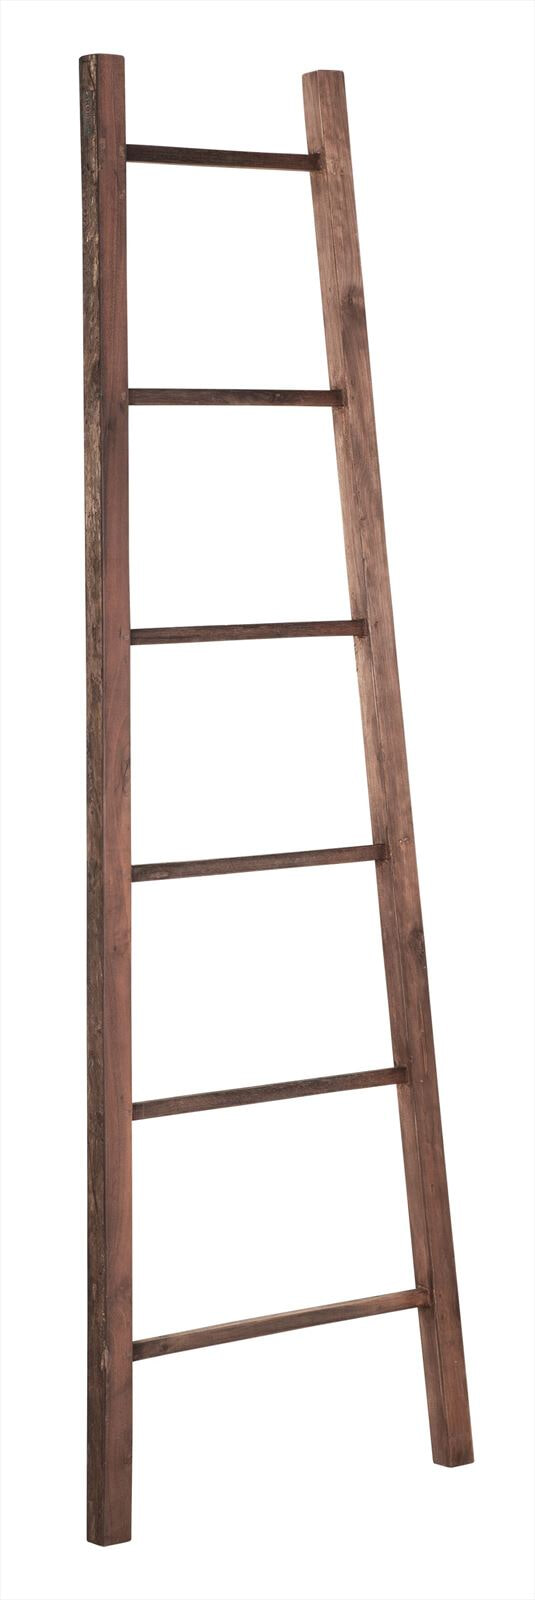 DTP Home Wandrek / Ladder Timber Hout, 175cm - Naturel